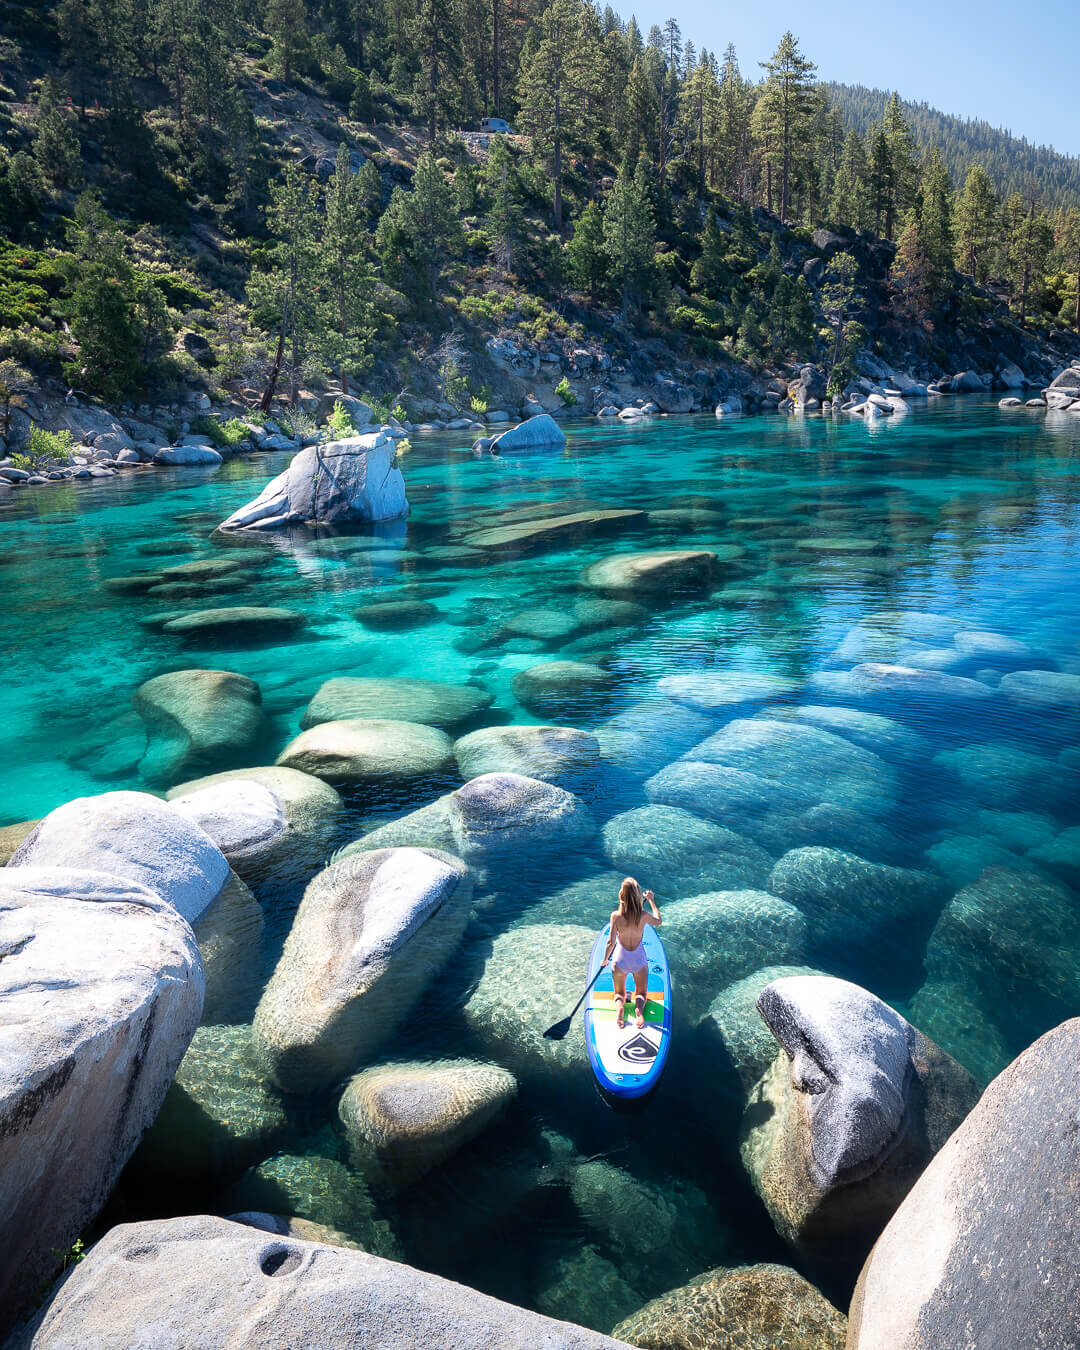 Paddle boarding at Lake Tahoe.